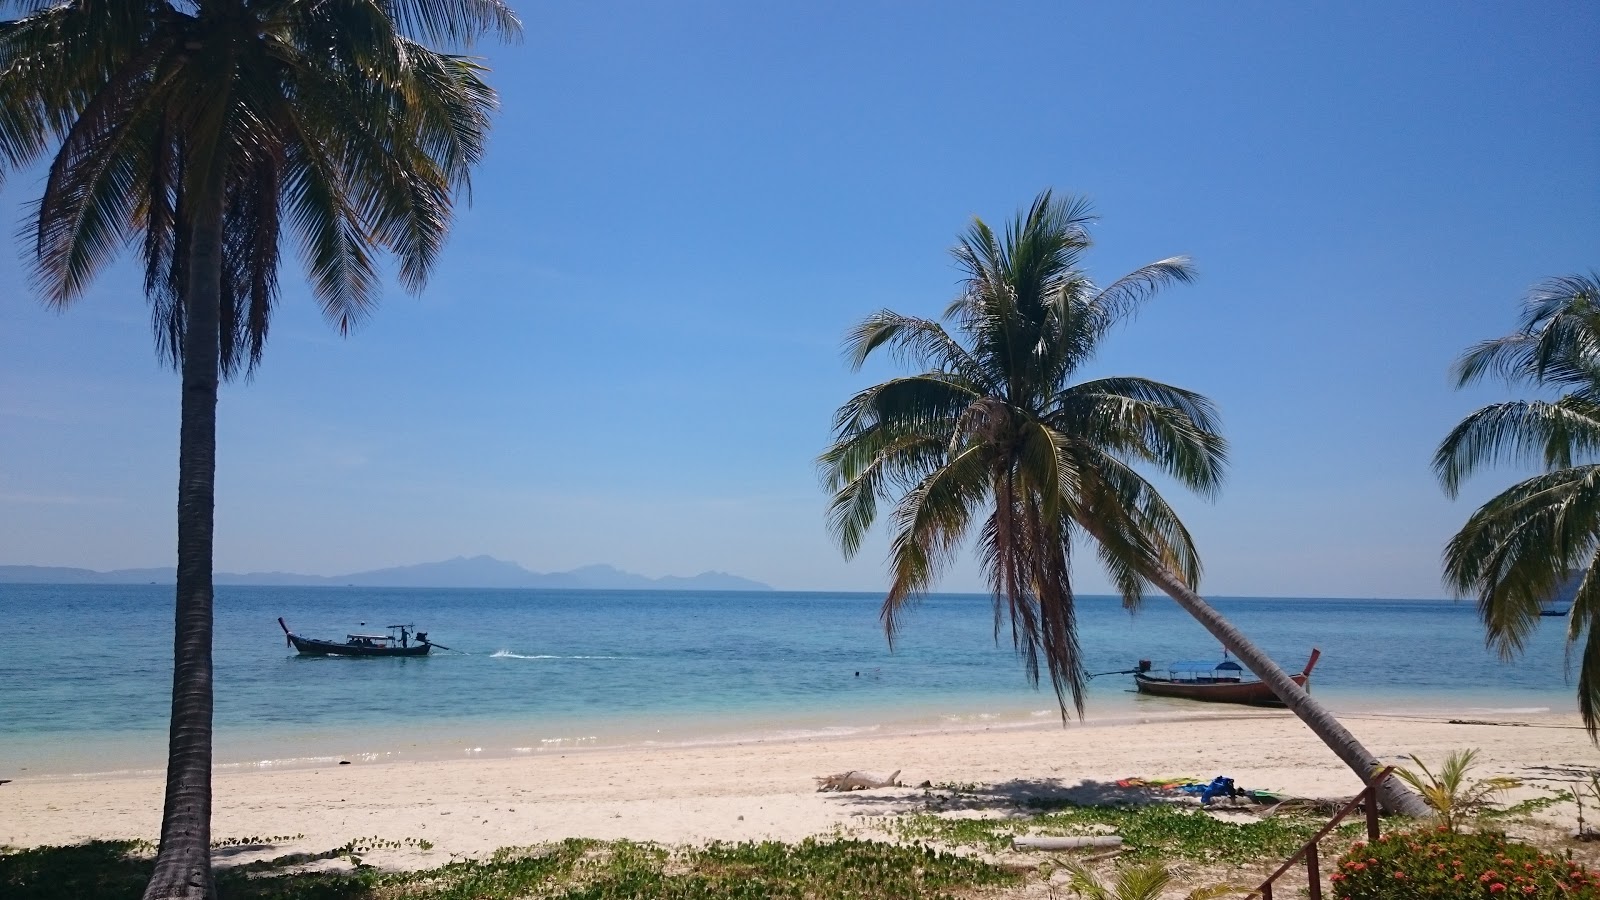 Foto von Strand von Koh Bulon Le befindet sich in natürlicher umgebung